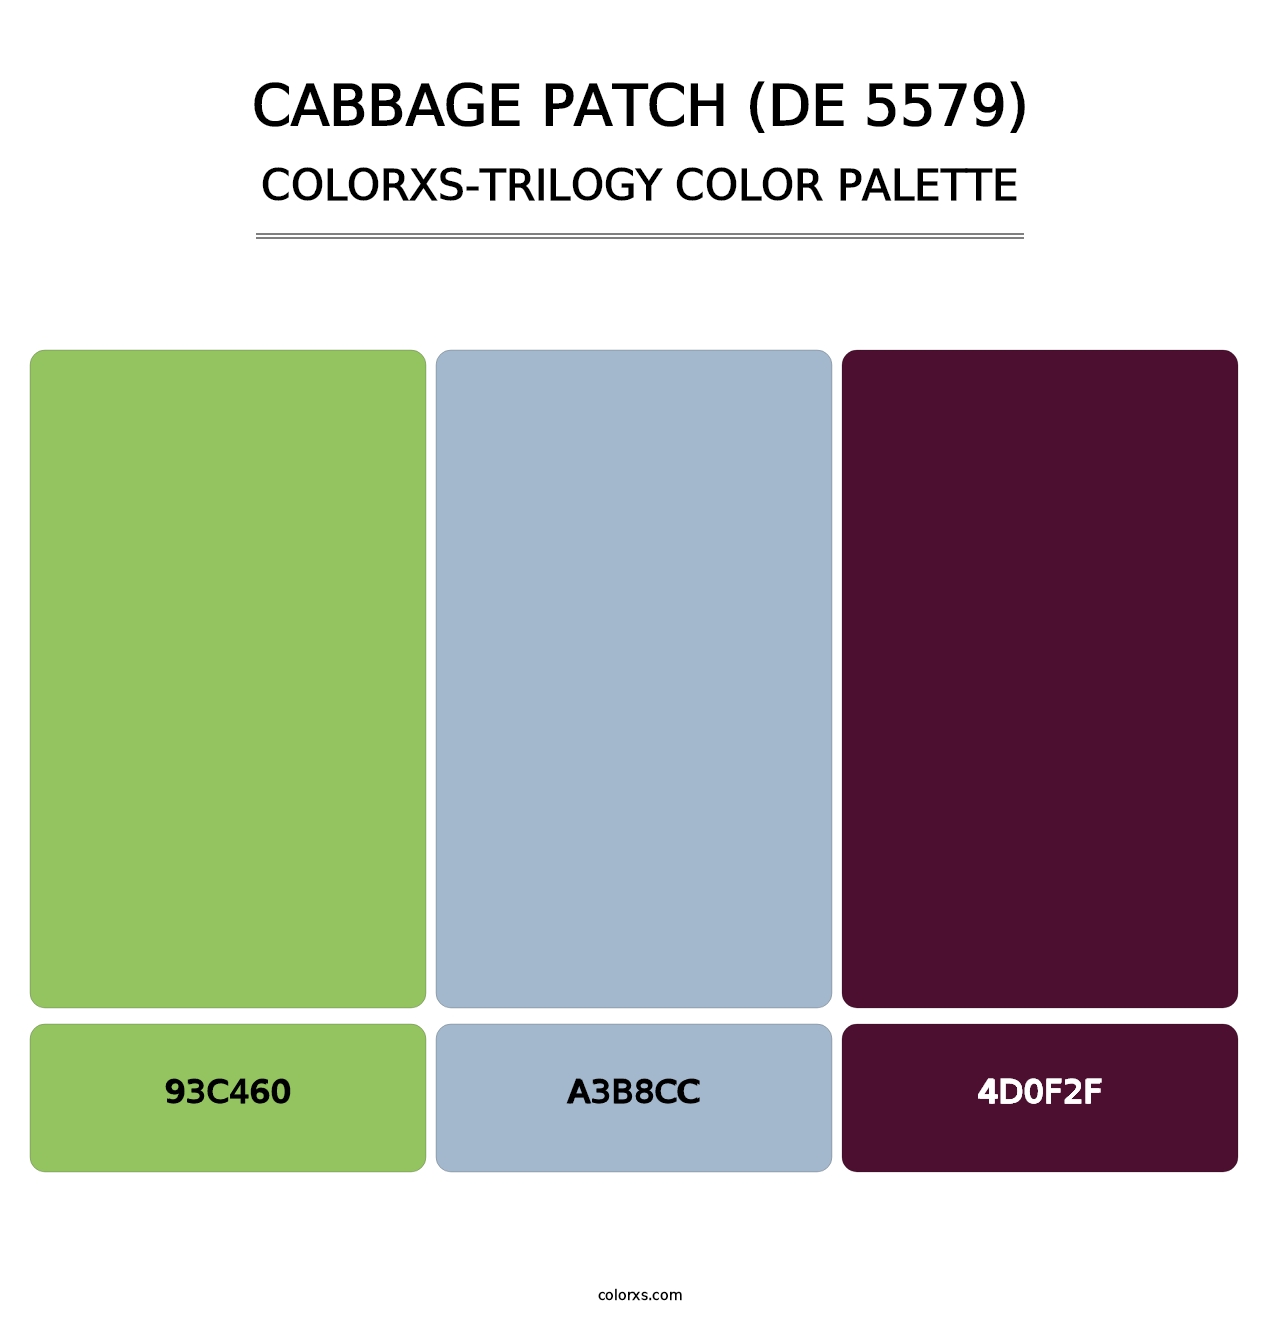 Cabbage Patch (DE 5579) - Colorxs Trilogy Palette